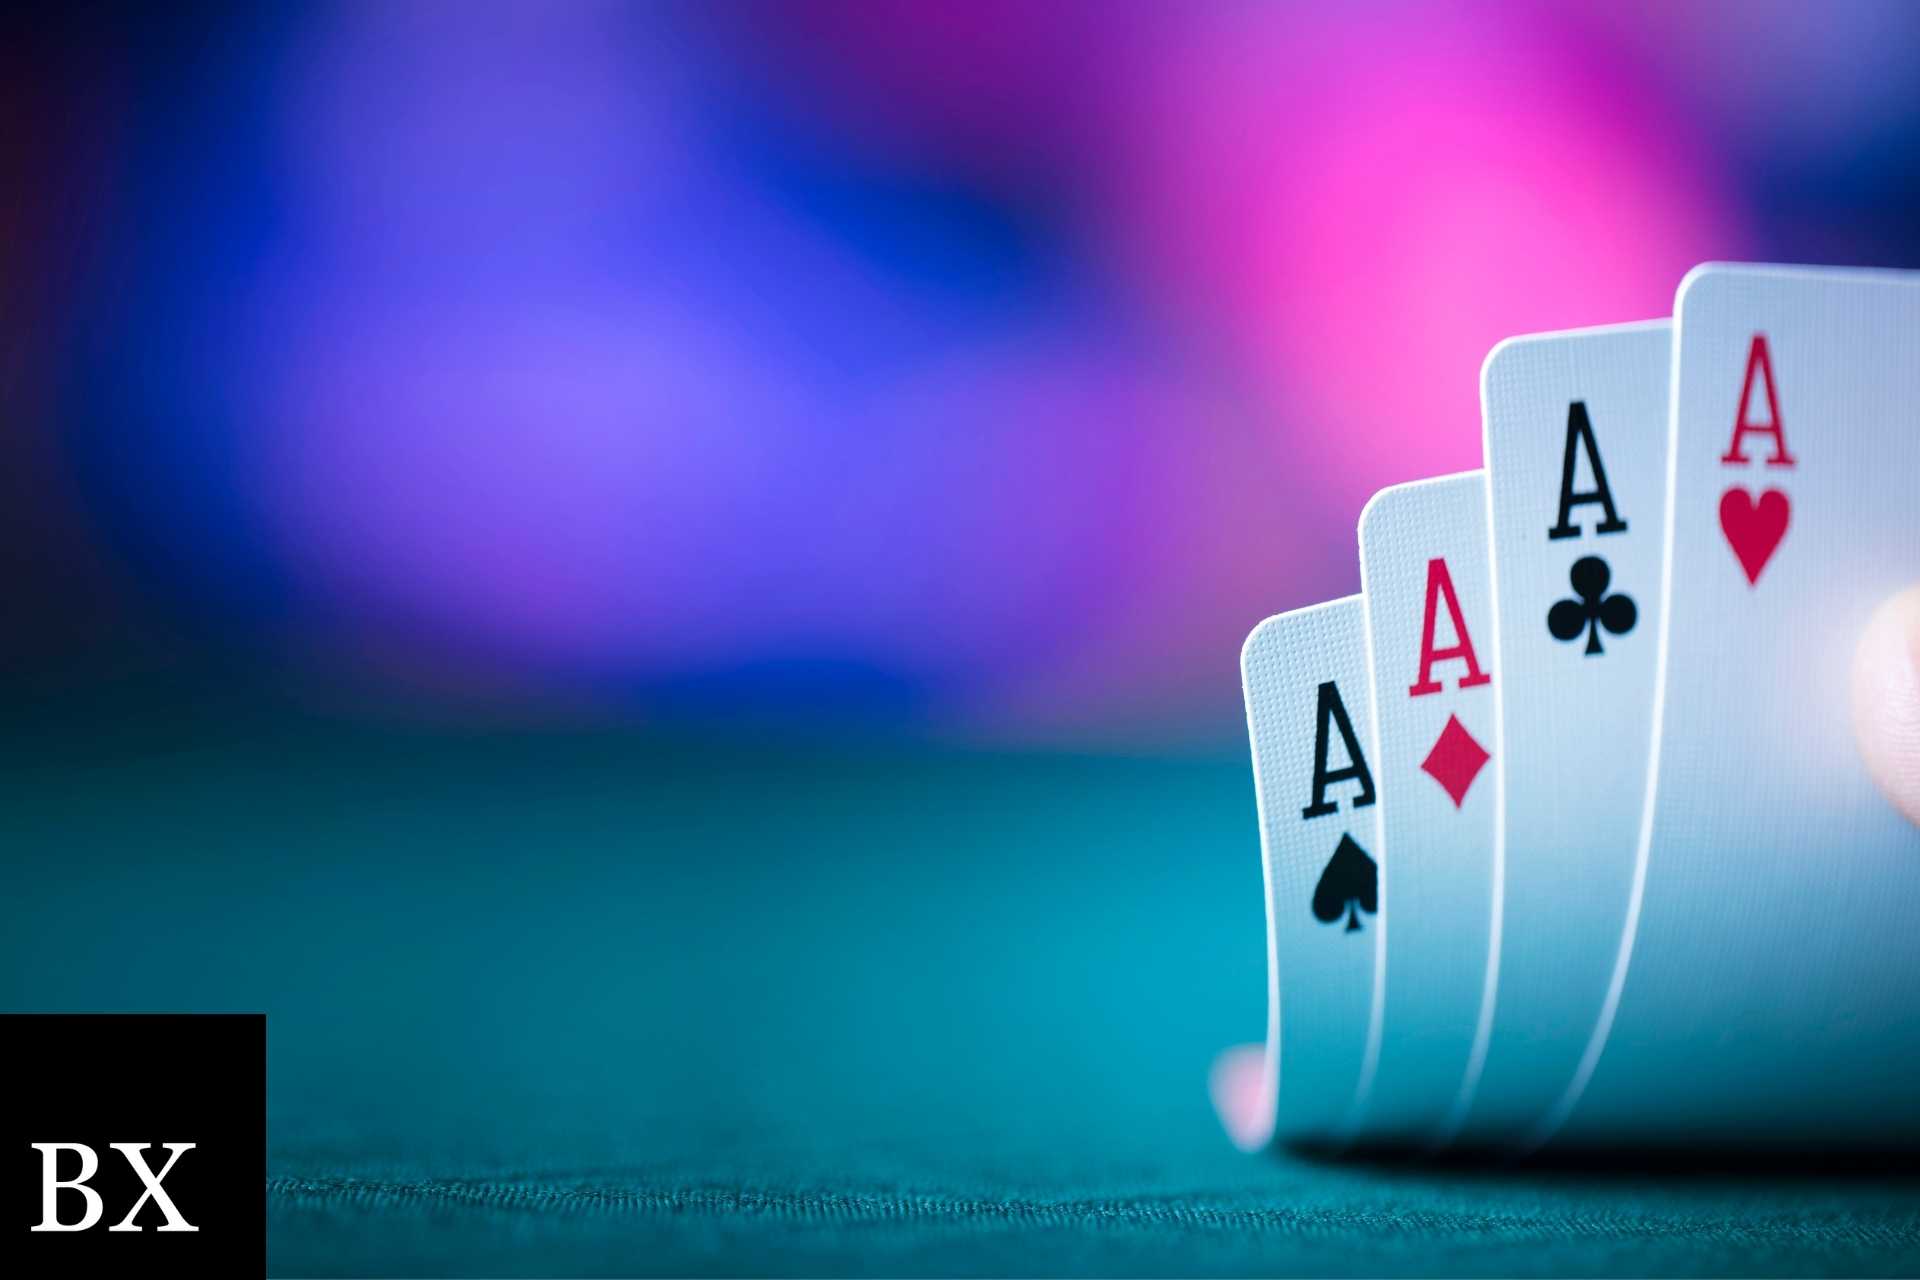 Virginia Texas Hold’em Poker Tournament Operator Bond